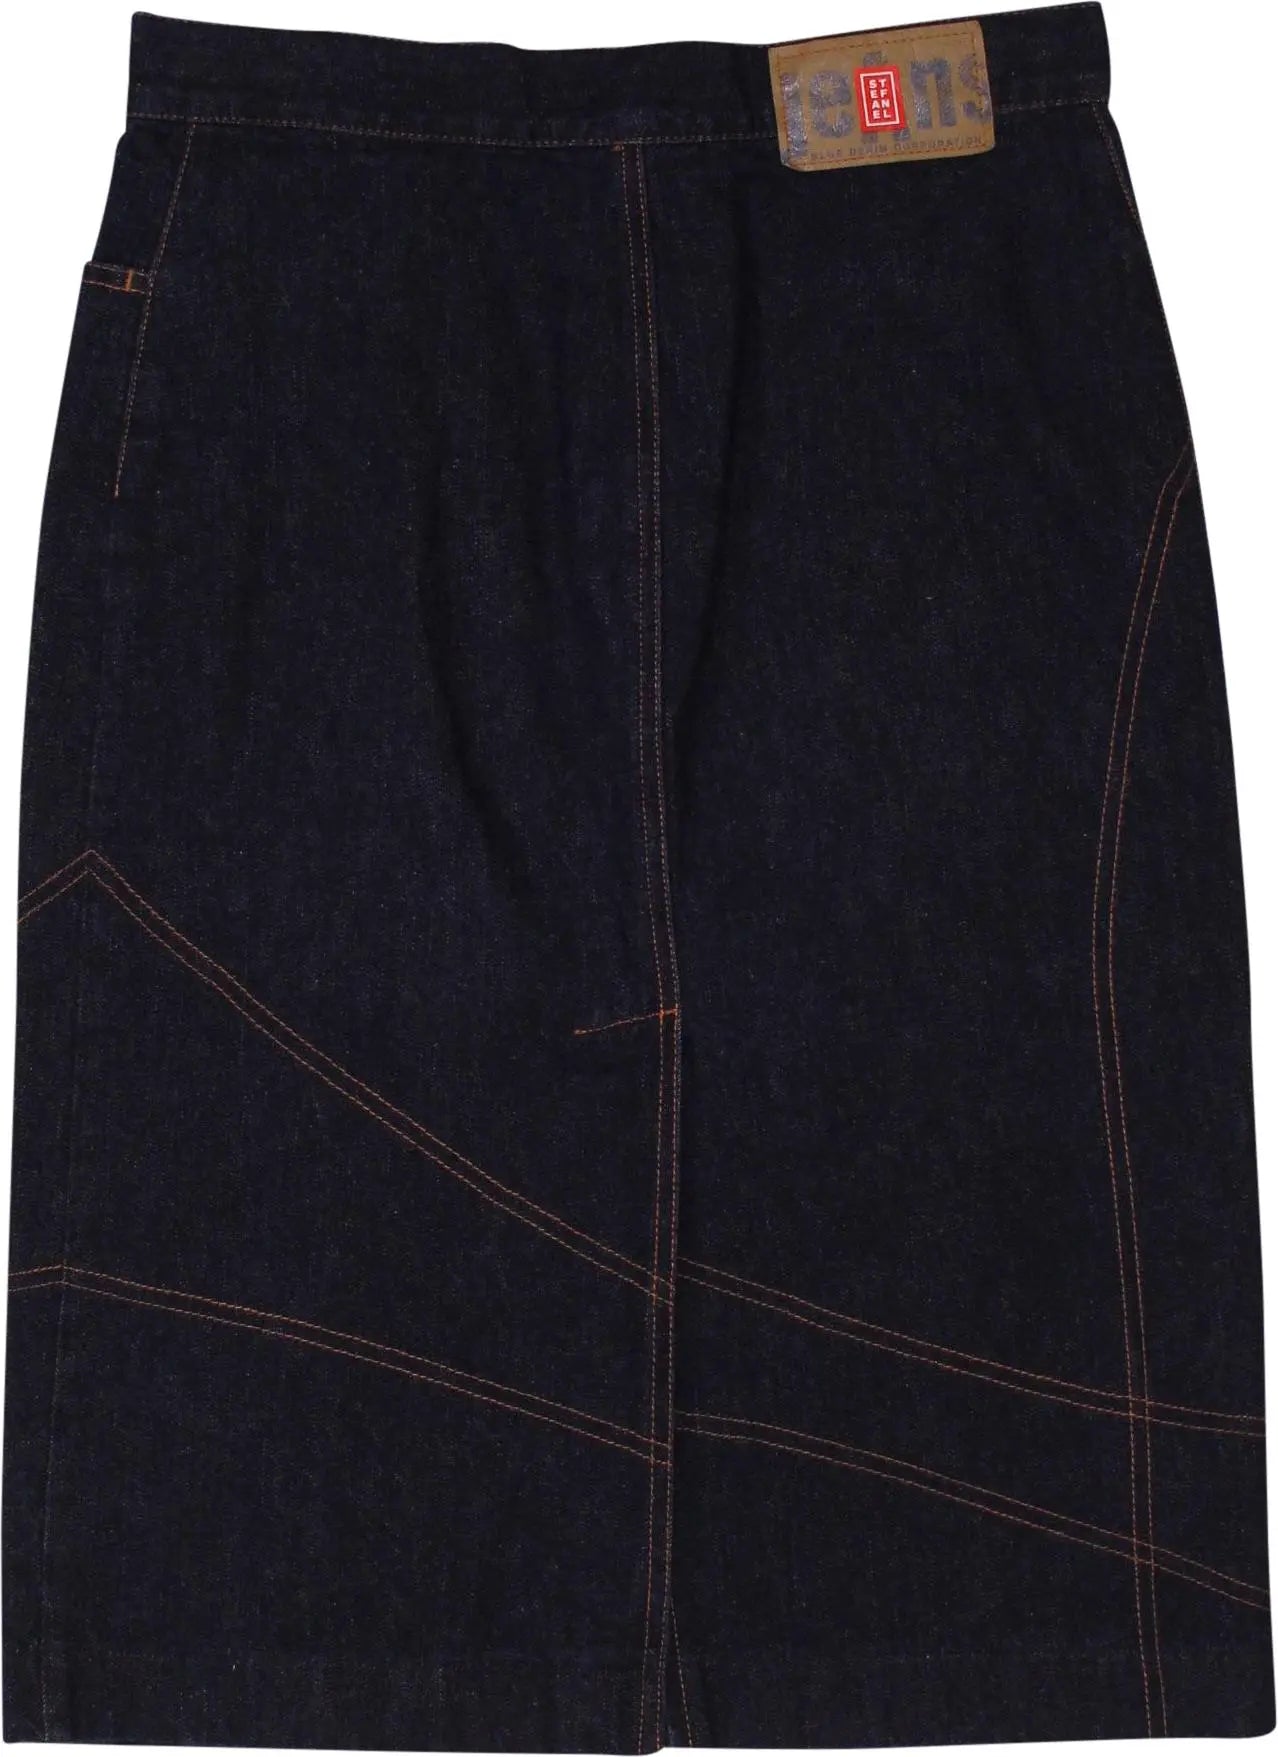 Stefanel - Dark Blue Denim Skirt- ThriftTale.com - Vintage and second handclothing